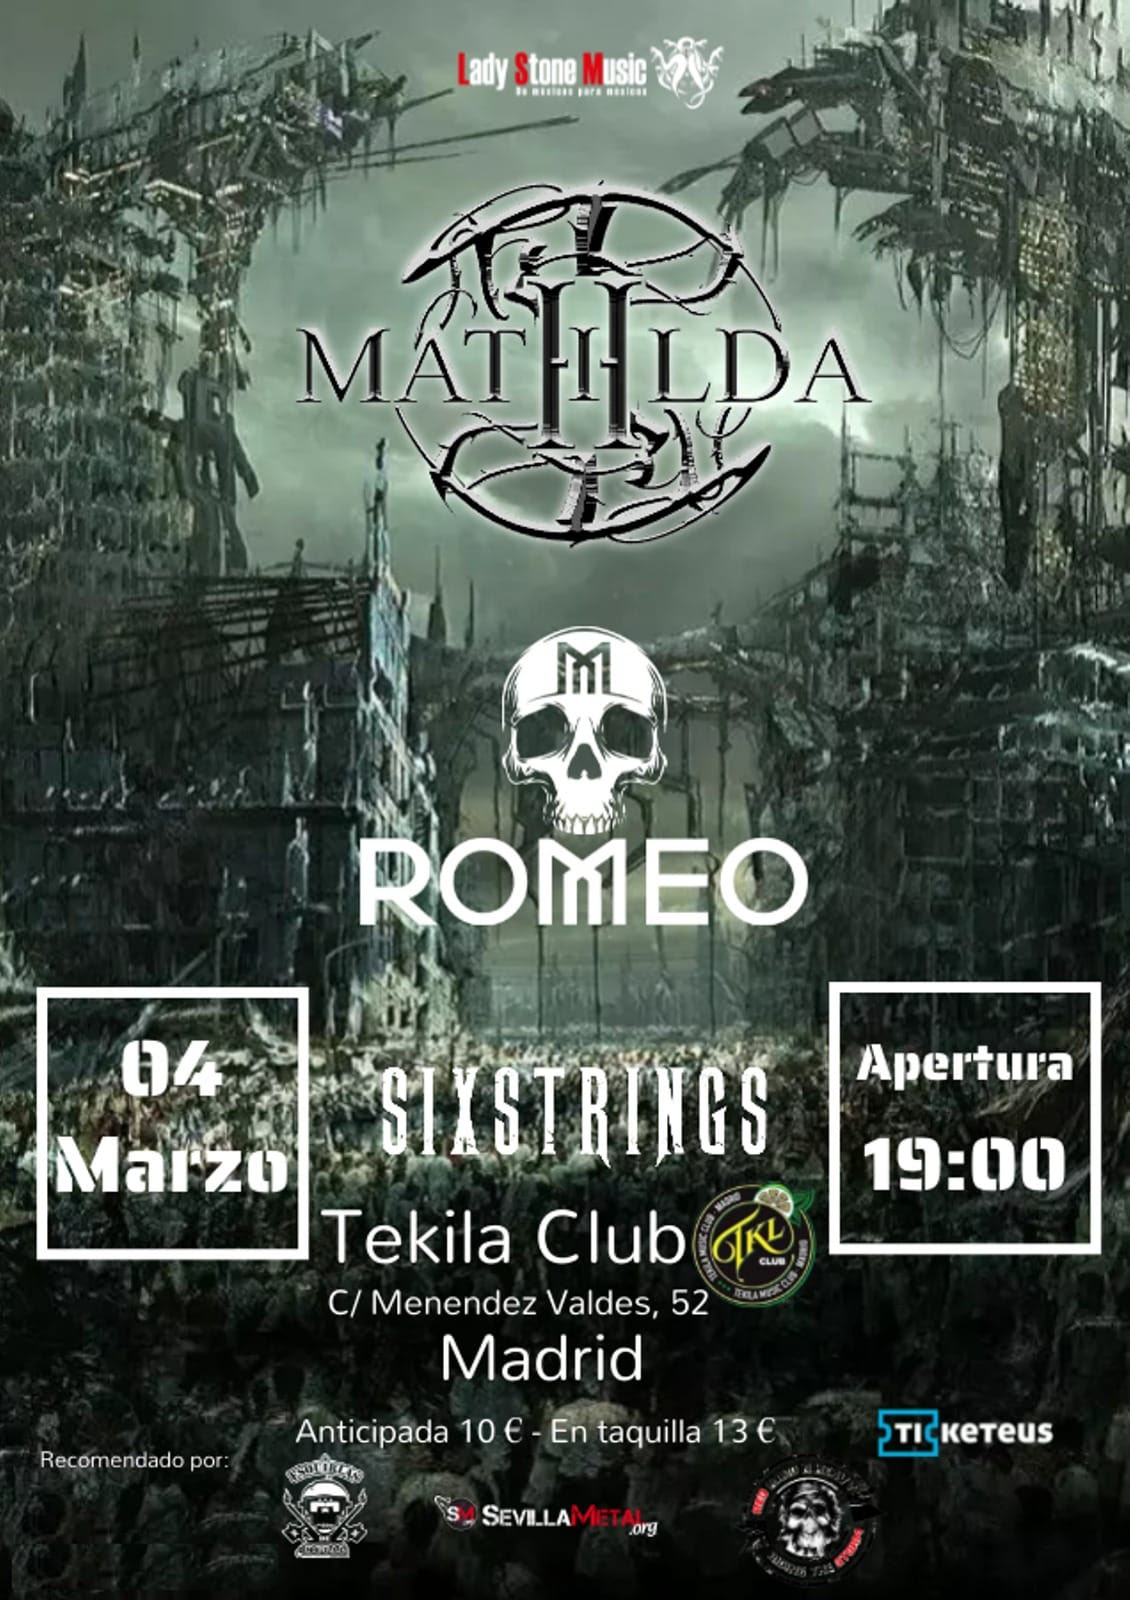 MATHILDA + ROMEO + SIXSTRINGS en directo en Madrid el 4 de marzo